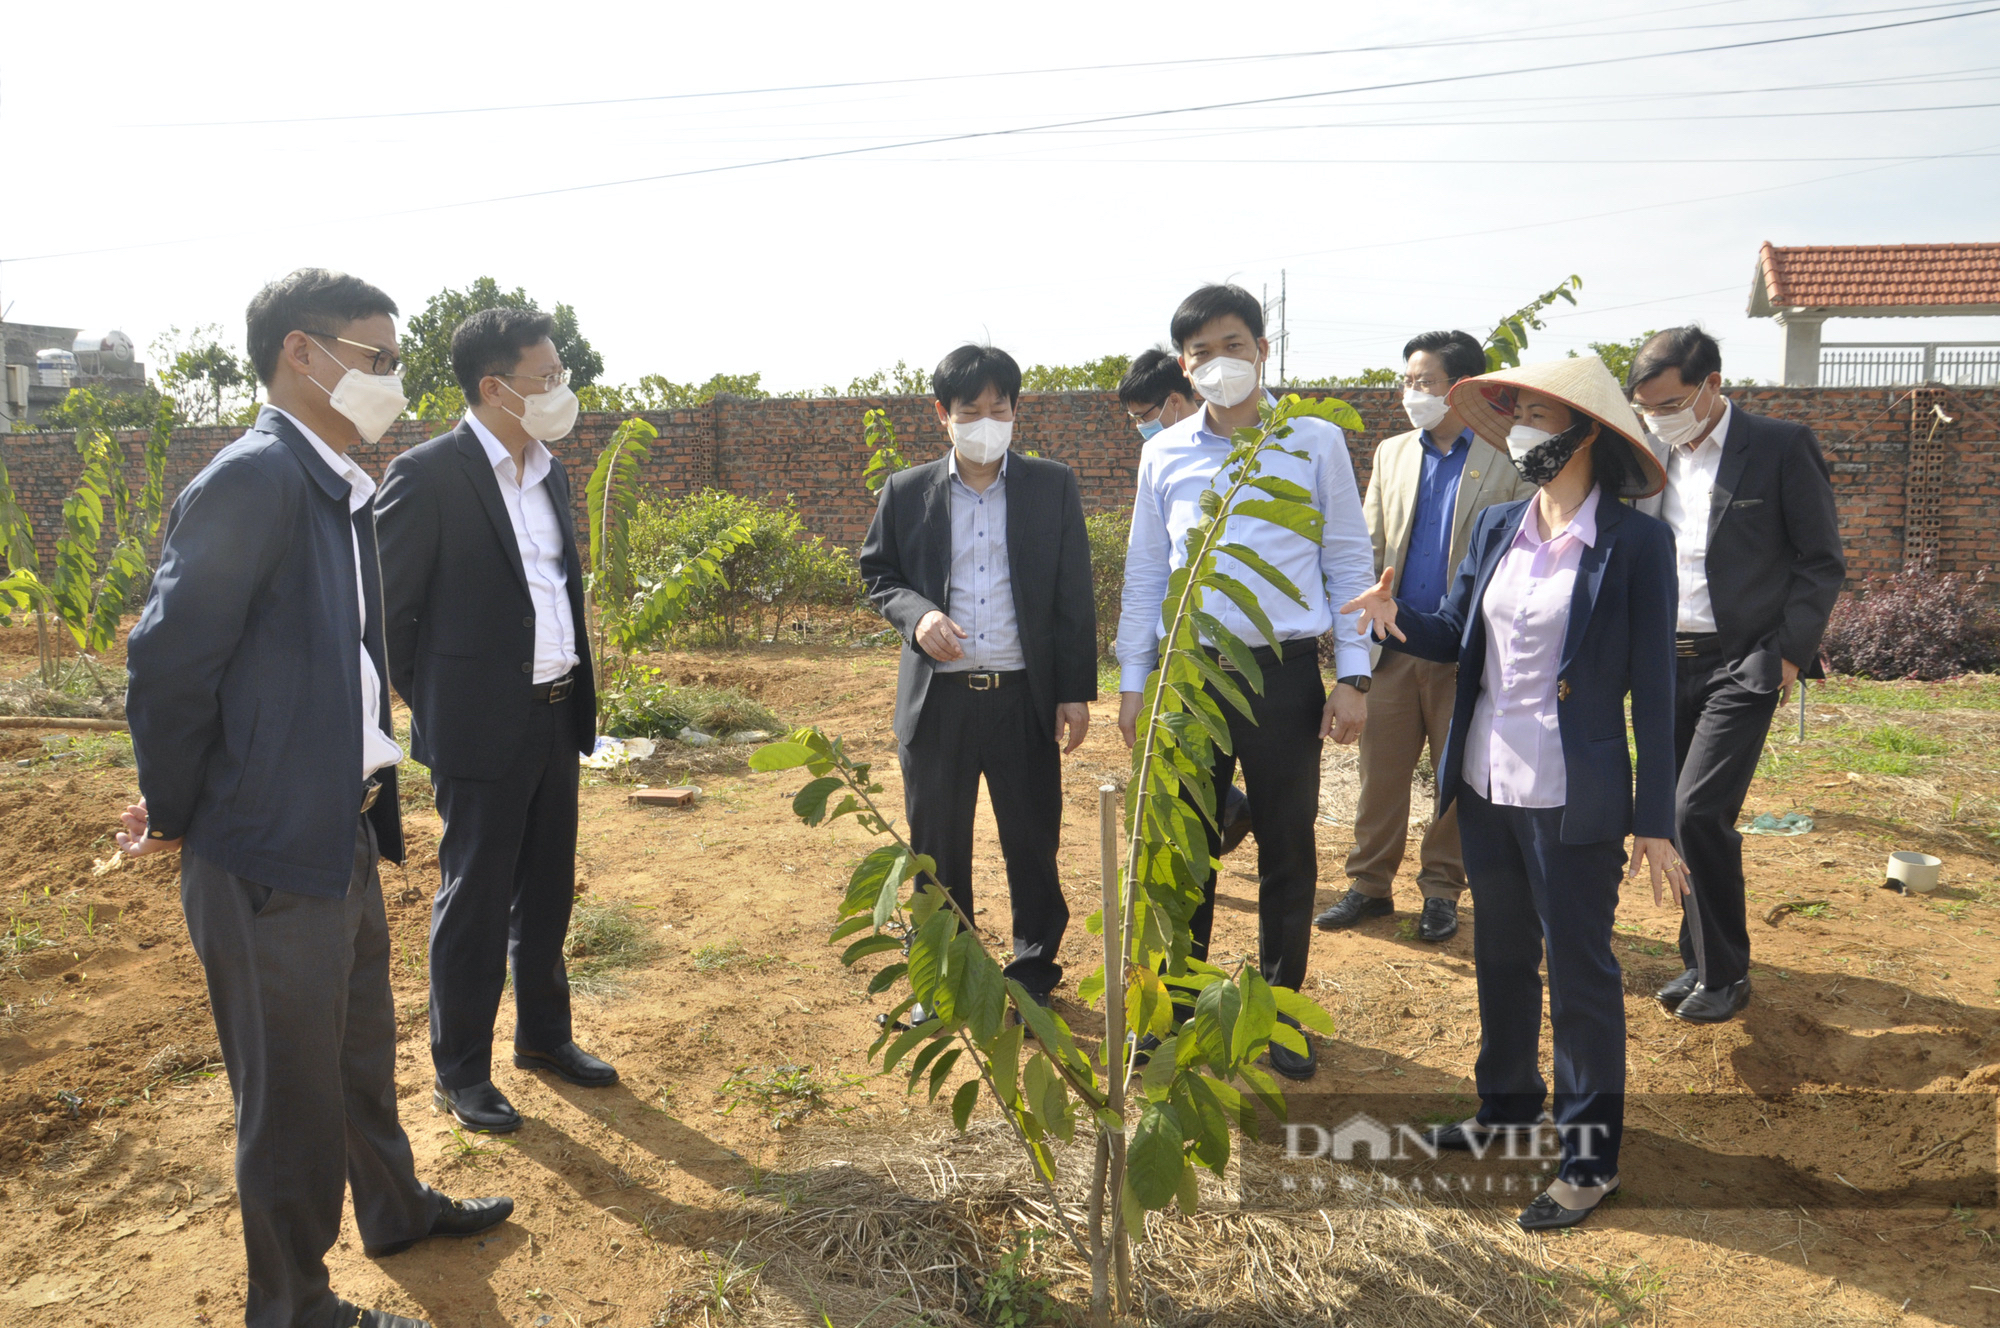 Phó Chủ tịch Hội Nông dân Việt Nam thăm mô hình ở Đông Triều, ấn tượng với xây dựng NTM nơi đây - Ảnh 2.